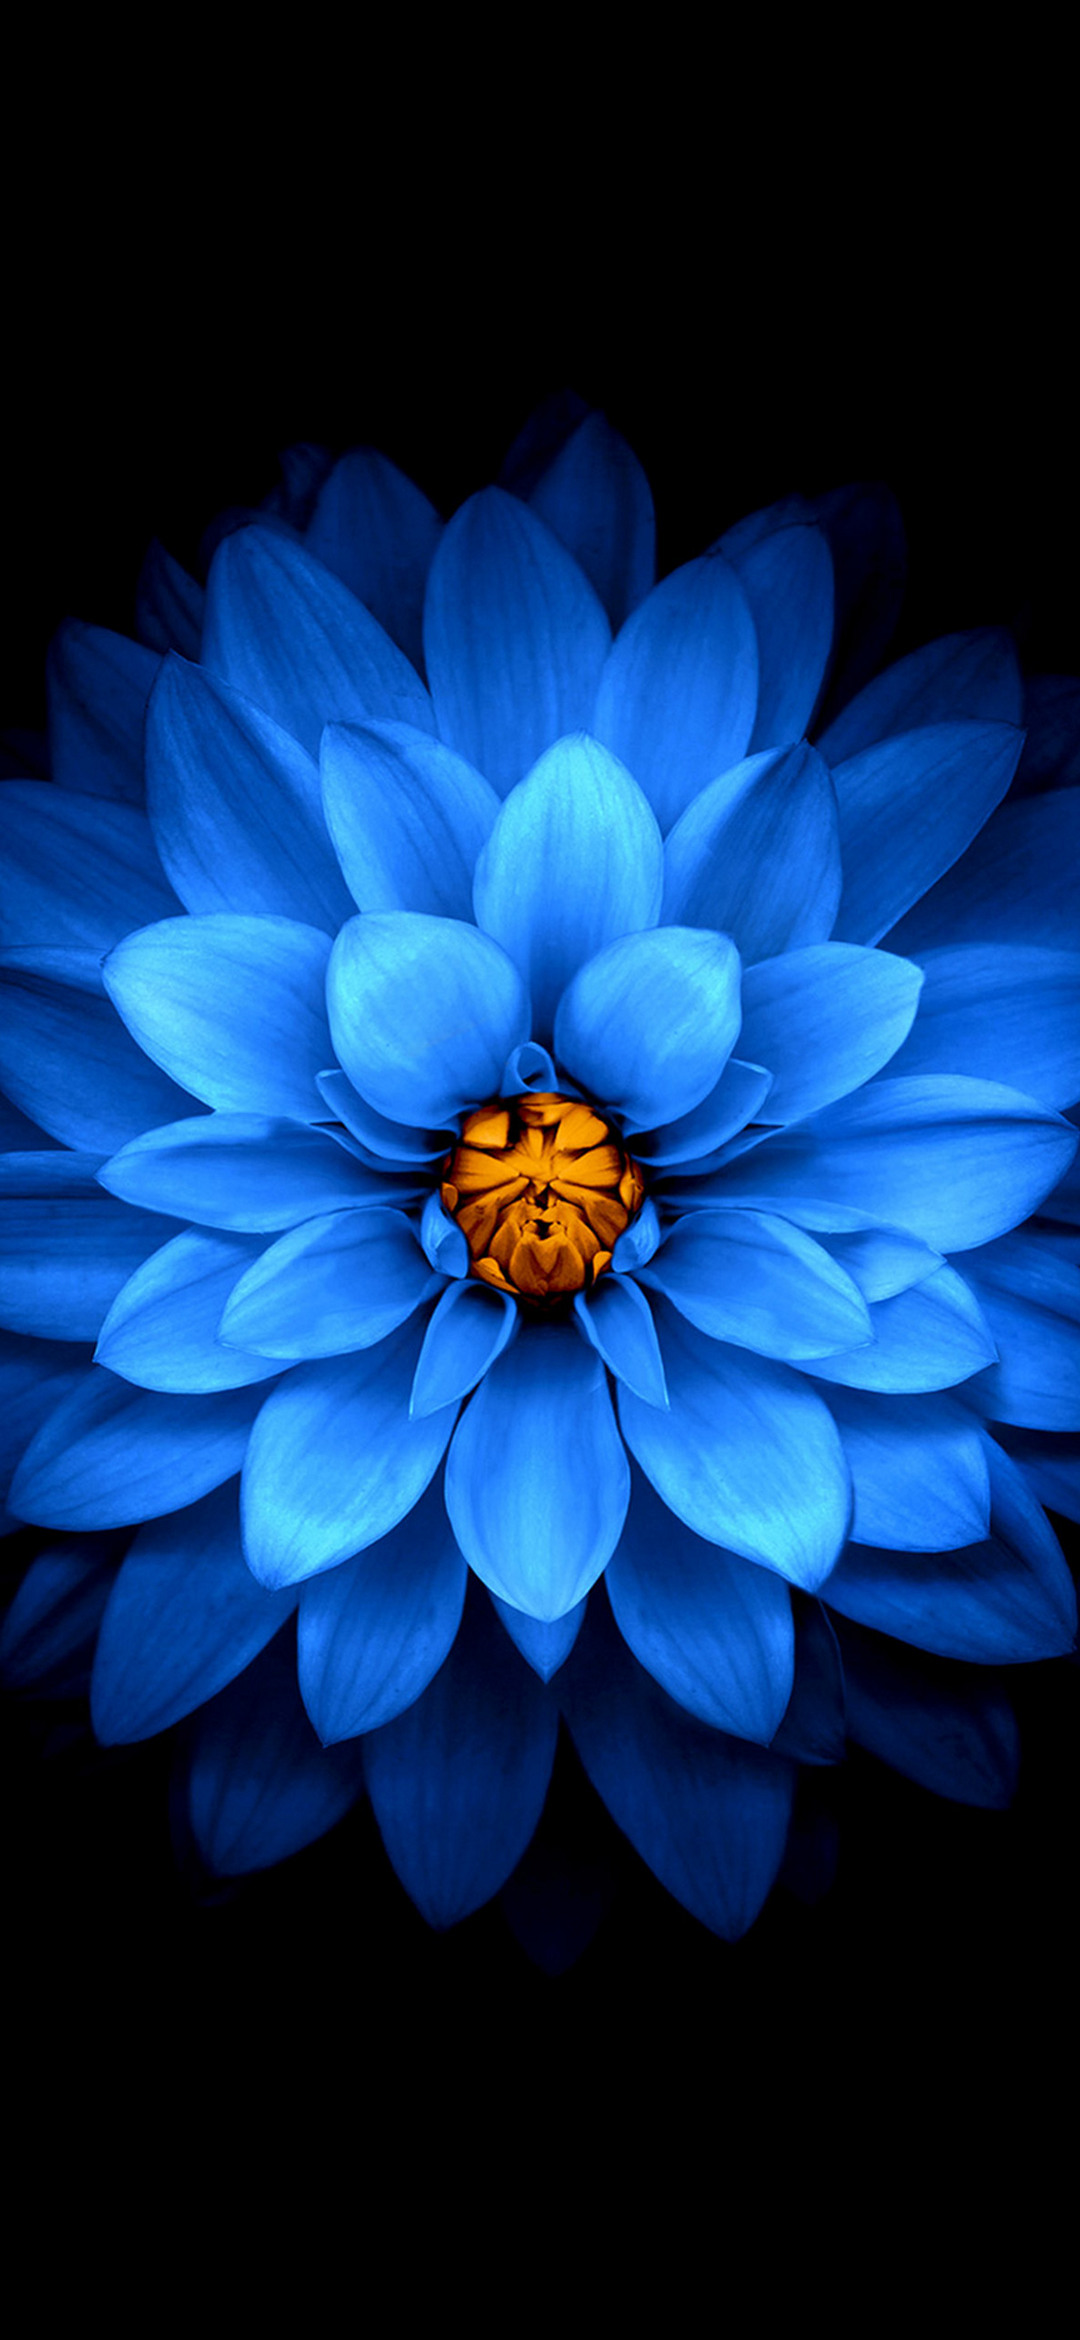 花びらの多い青い花 Find X Android スマホ壁紙 待ち受け スマラン